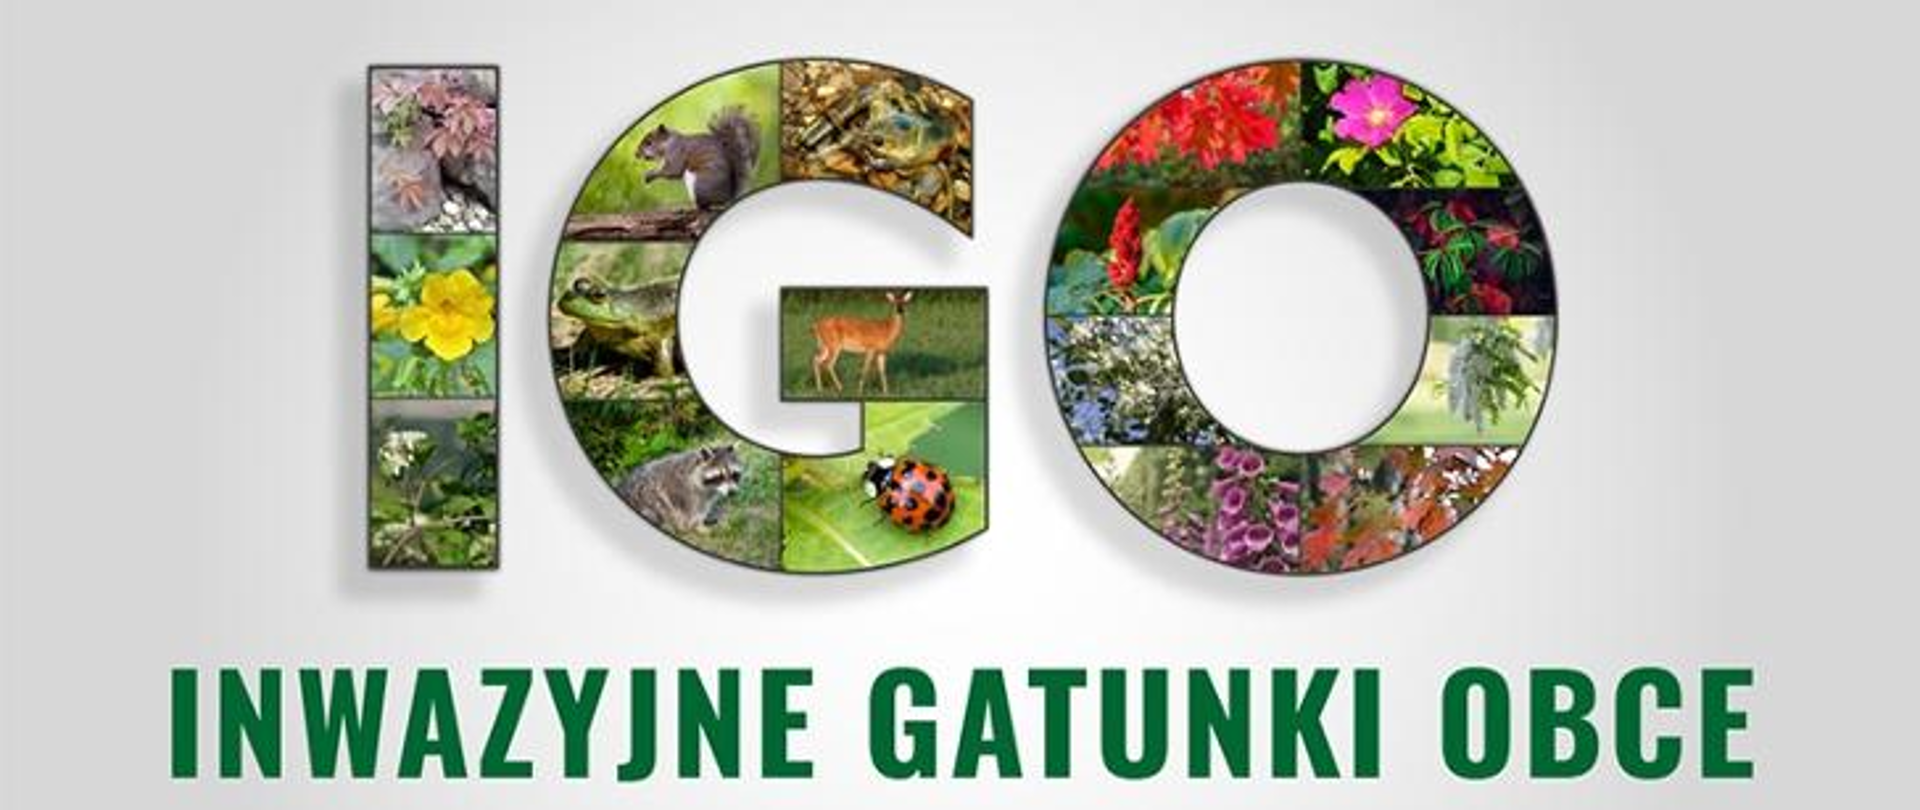 Grafika przedstawiająca litery IGO utworzone z mozaiki zdjęć na których widoczne są rośliny i zwierzęta. Pod spodem napis "inwazyjne gatunki obce"